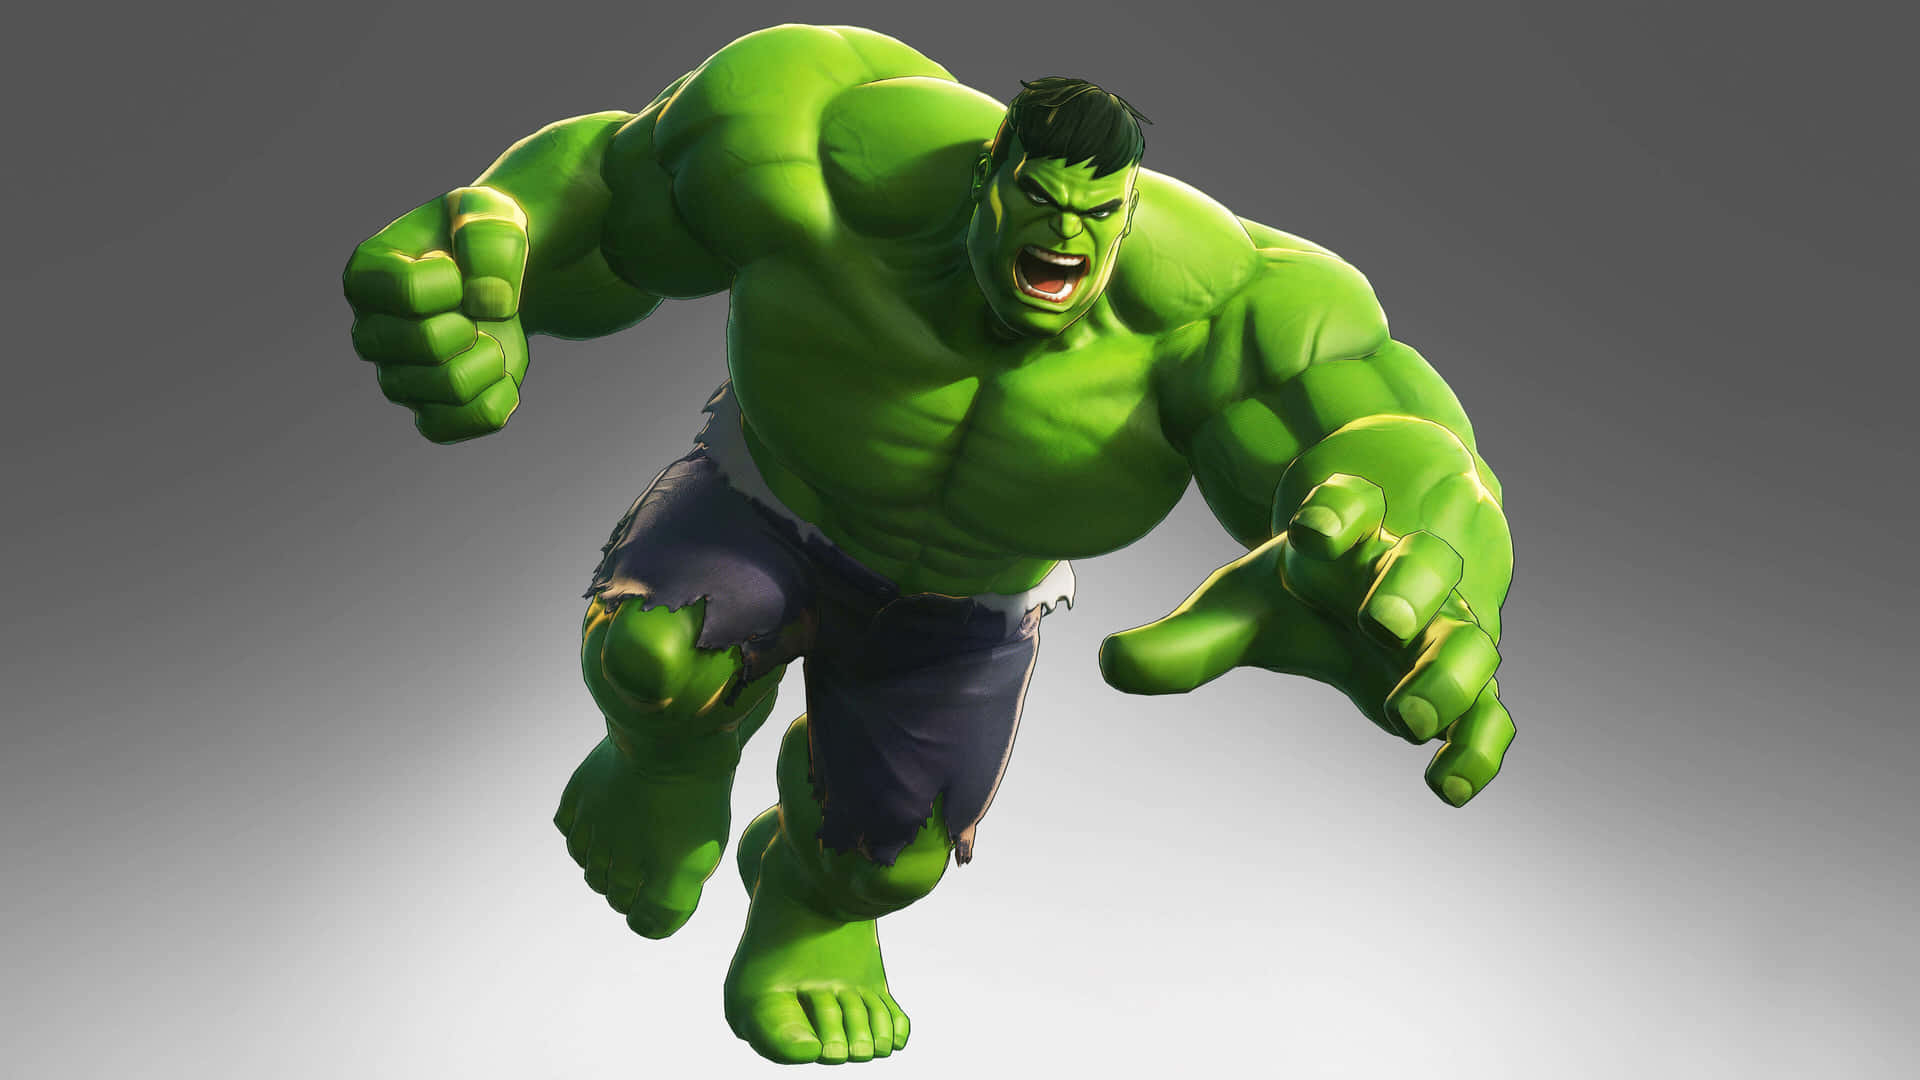 Dieenorme Kraft Des Unglaublichen Hulk Entfesseln.